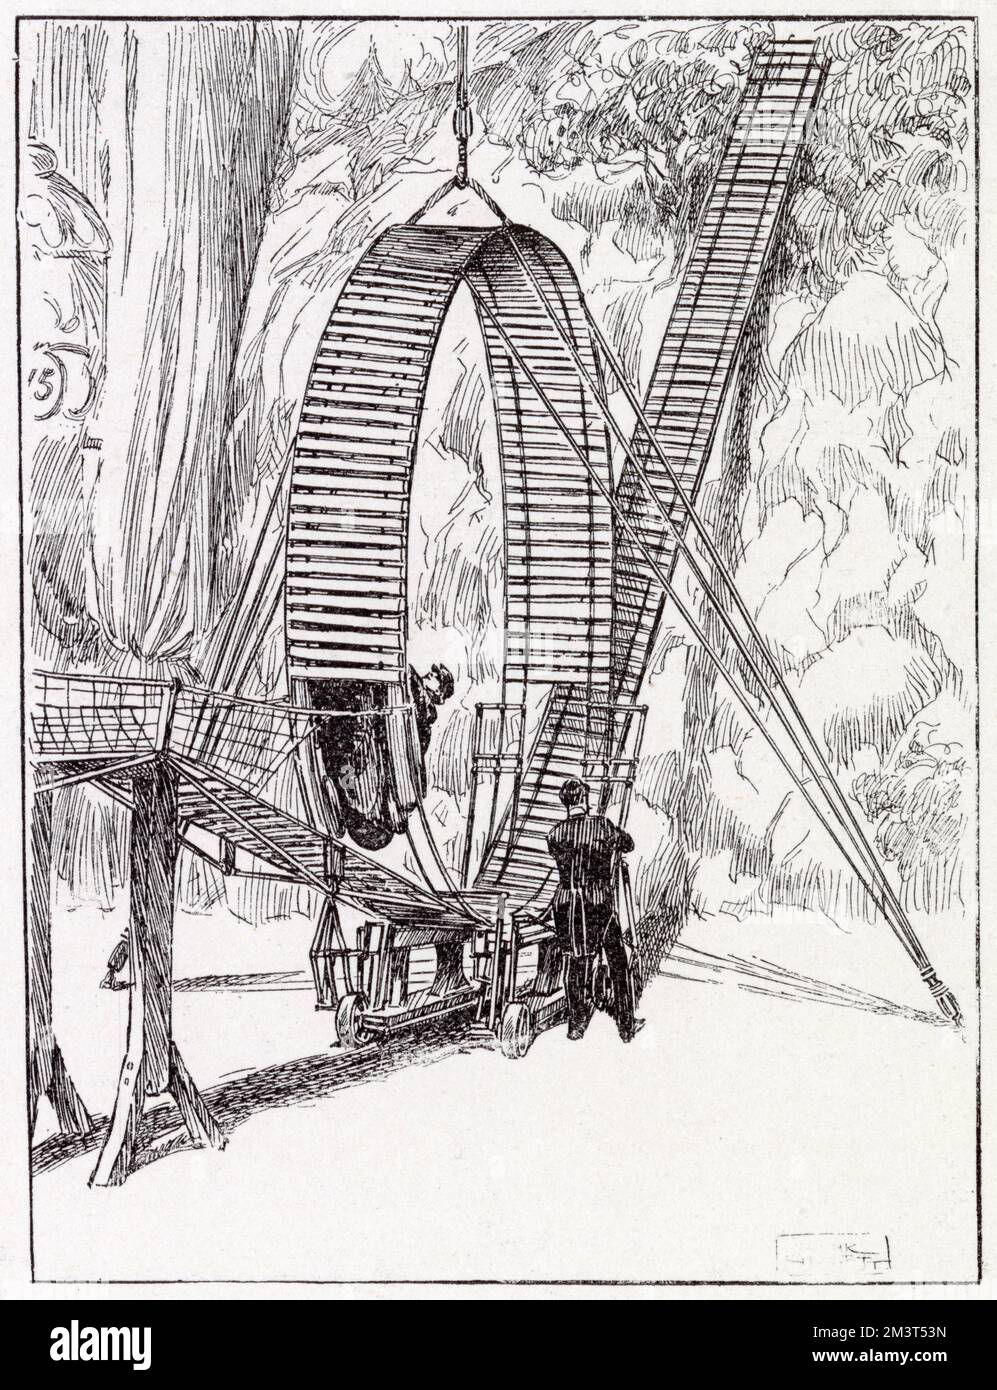 Die neueste Sensation am Londoner Hippodrom im Jahr 1903: Miss Mina Alix hat einen Rundgang absolviert, nachdem sie ihr Auto über eine 58 m lange Strecke gefahren hat. Ihr Ausgang wurde durch ein Netz 4 Meter vom Ausgang gepuffert. Stockfoto